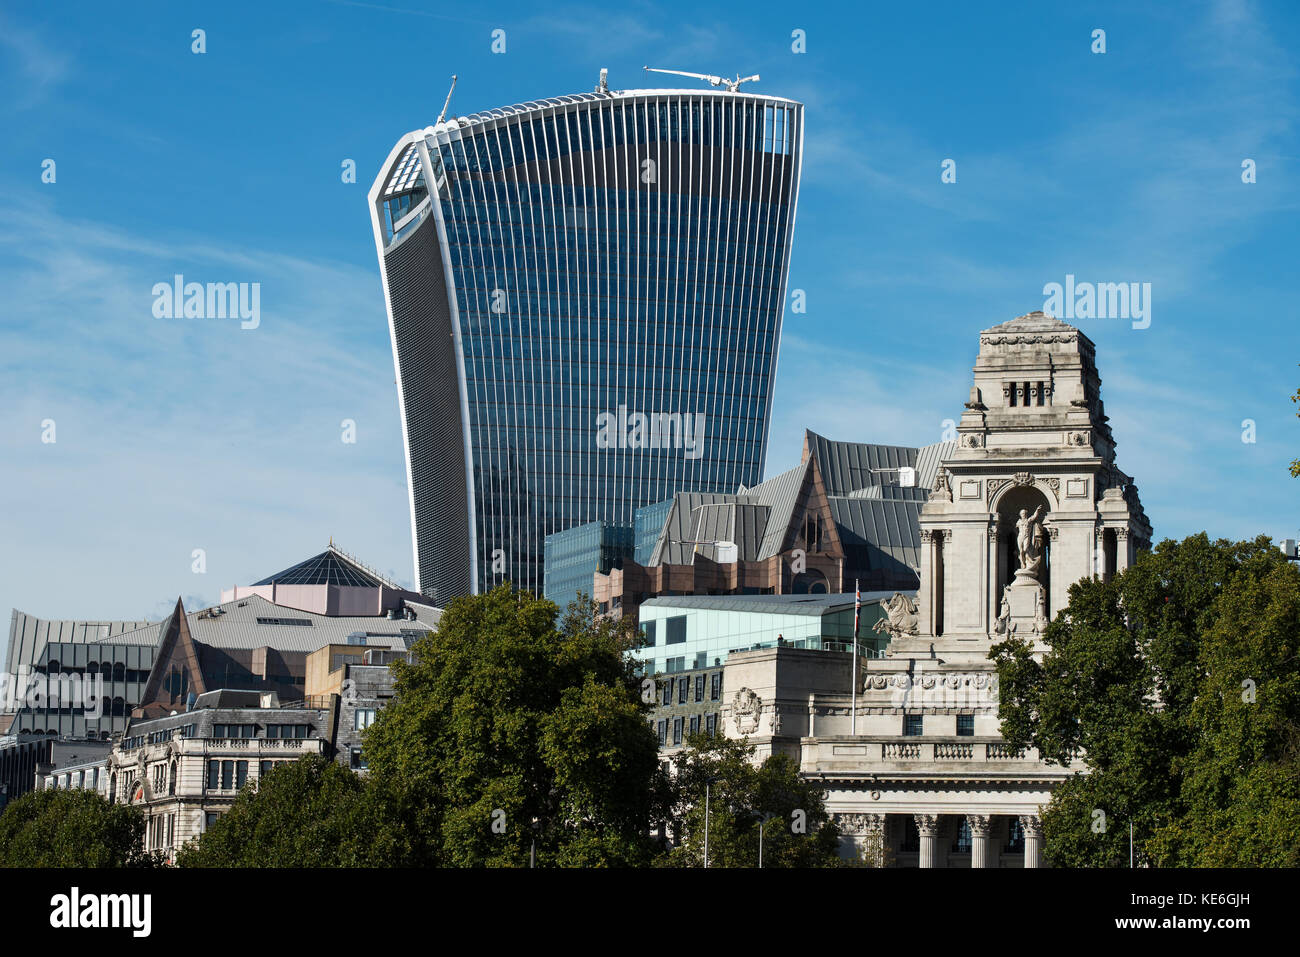 Stadt London moderne Gebäude kontrastieren mit alten Gebäuden von der Tower Bridge, London England fotografiert. Okt 2017 gesehen hier 20 Fenchurch Street Stockfoto